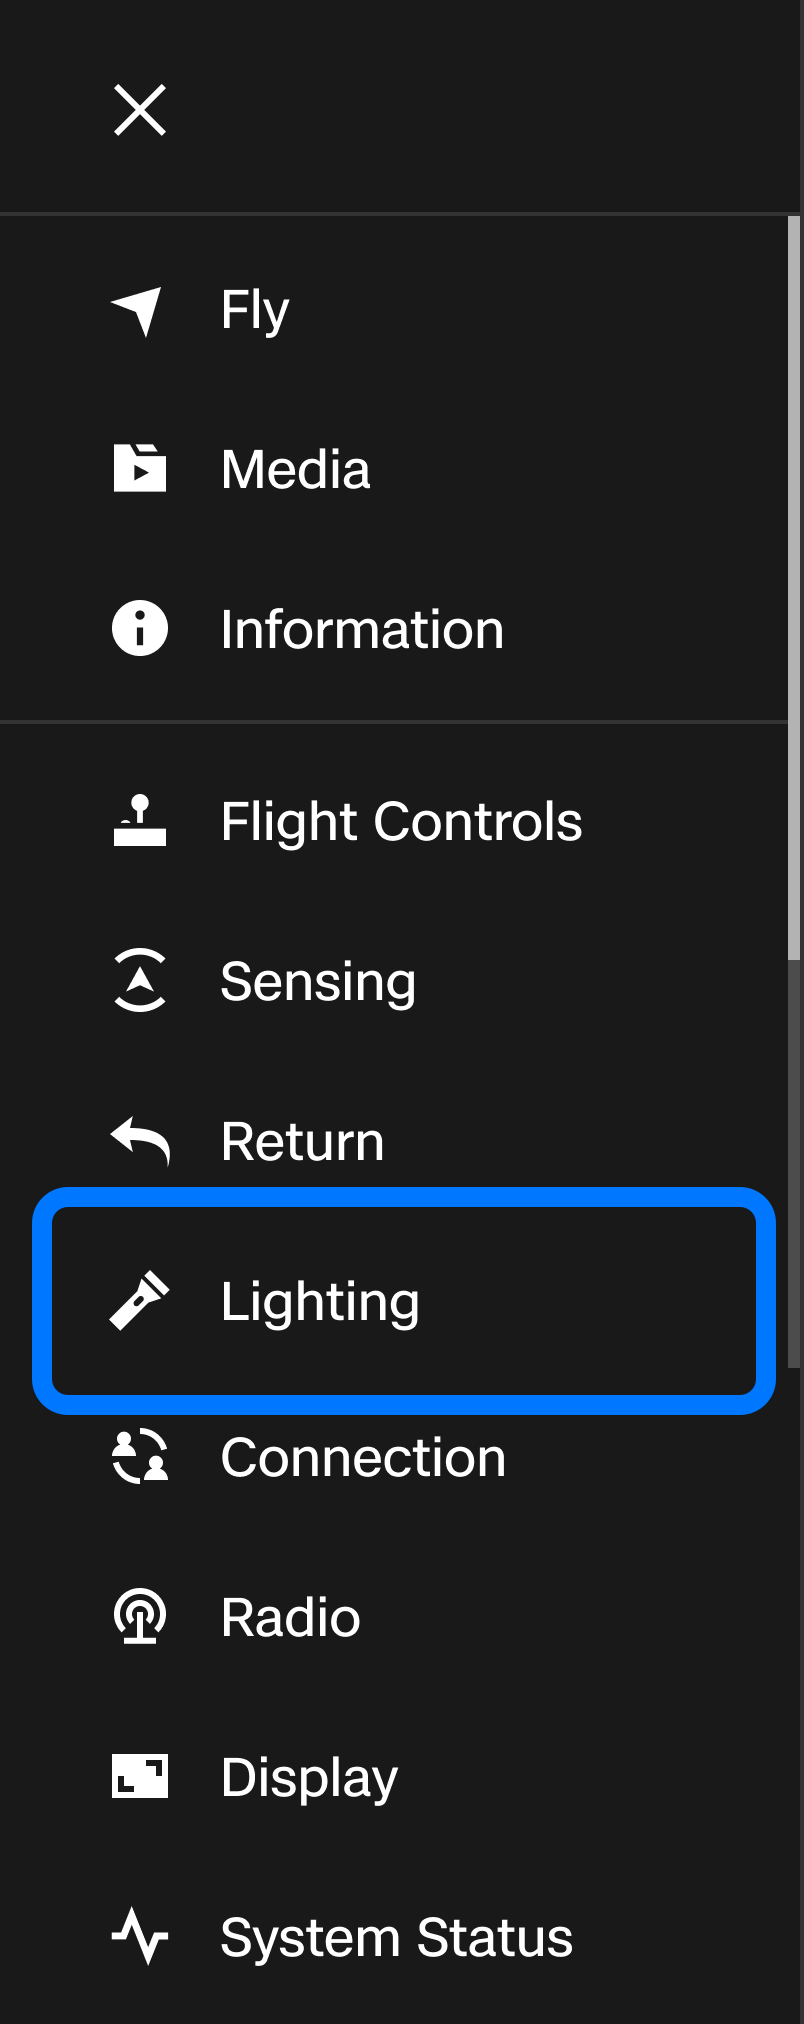 CS_X10_media_UI_global_settings_lighting.png